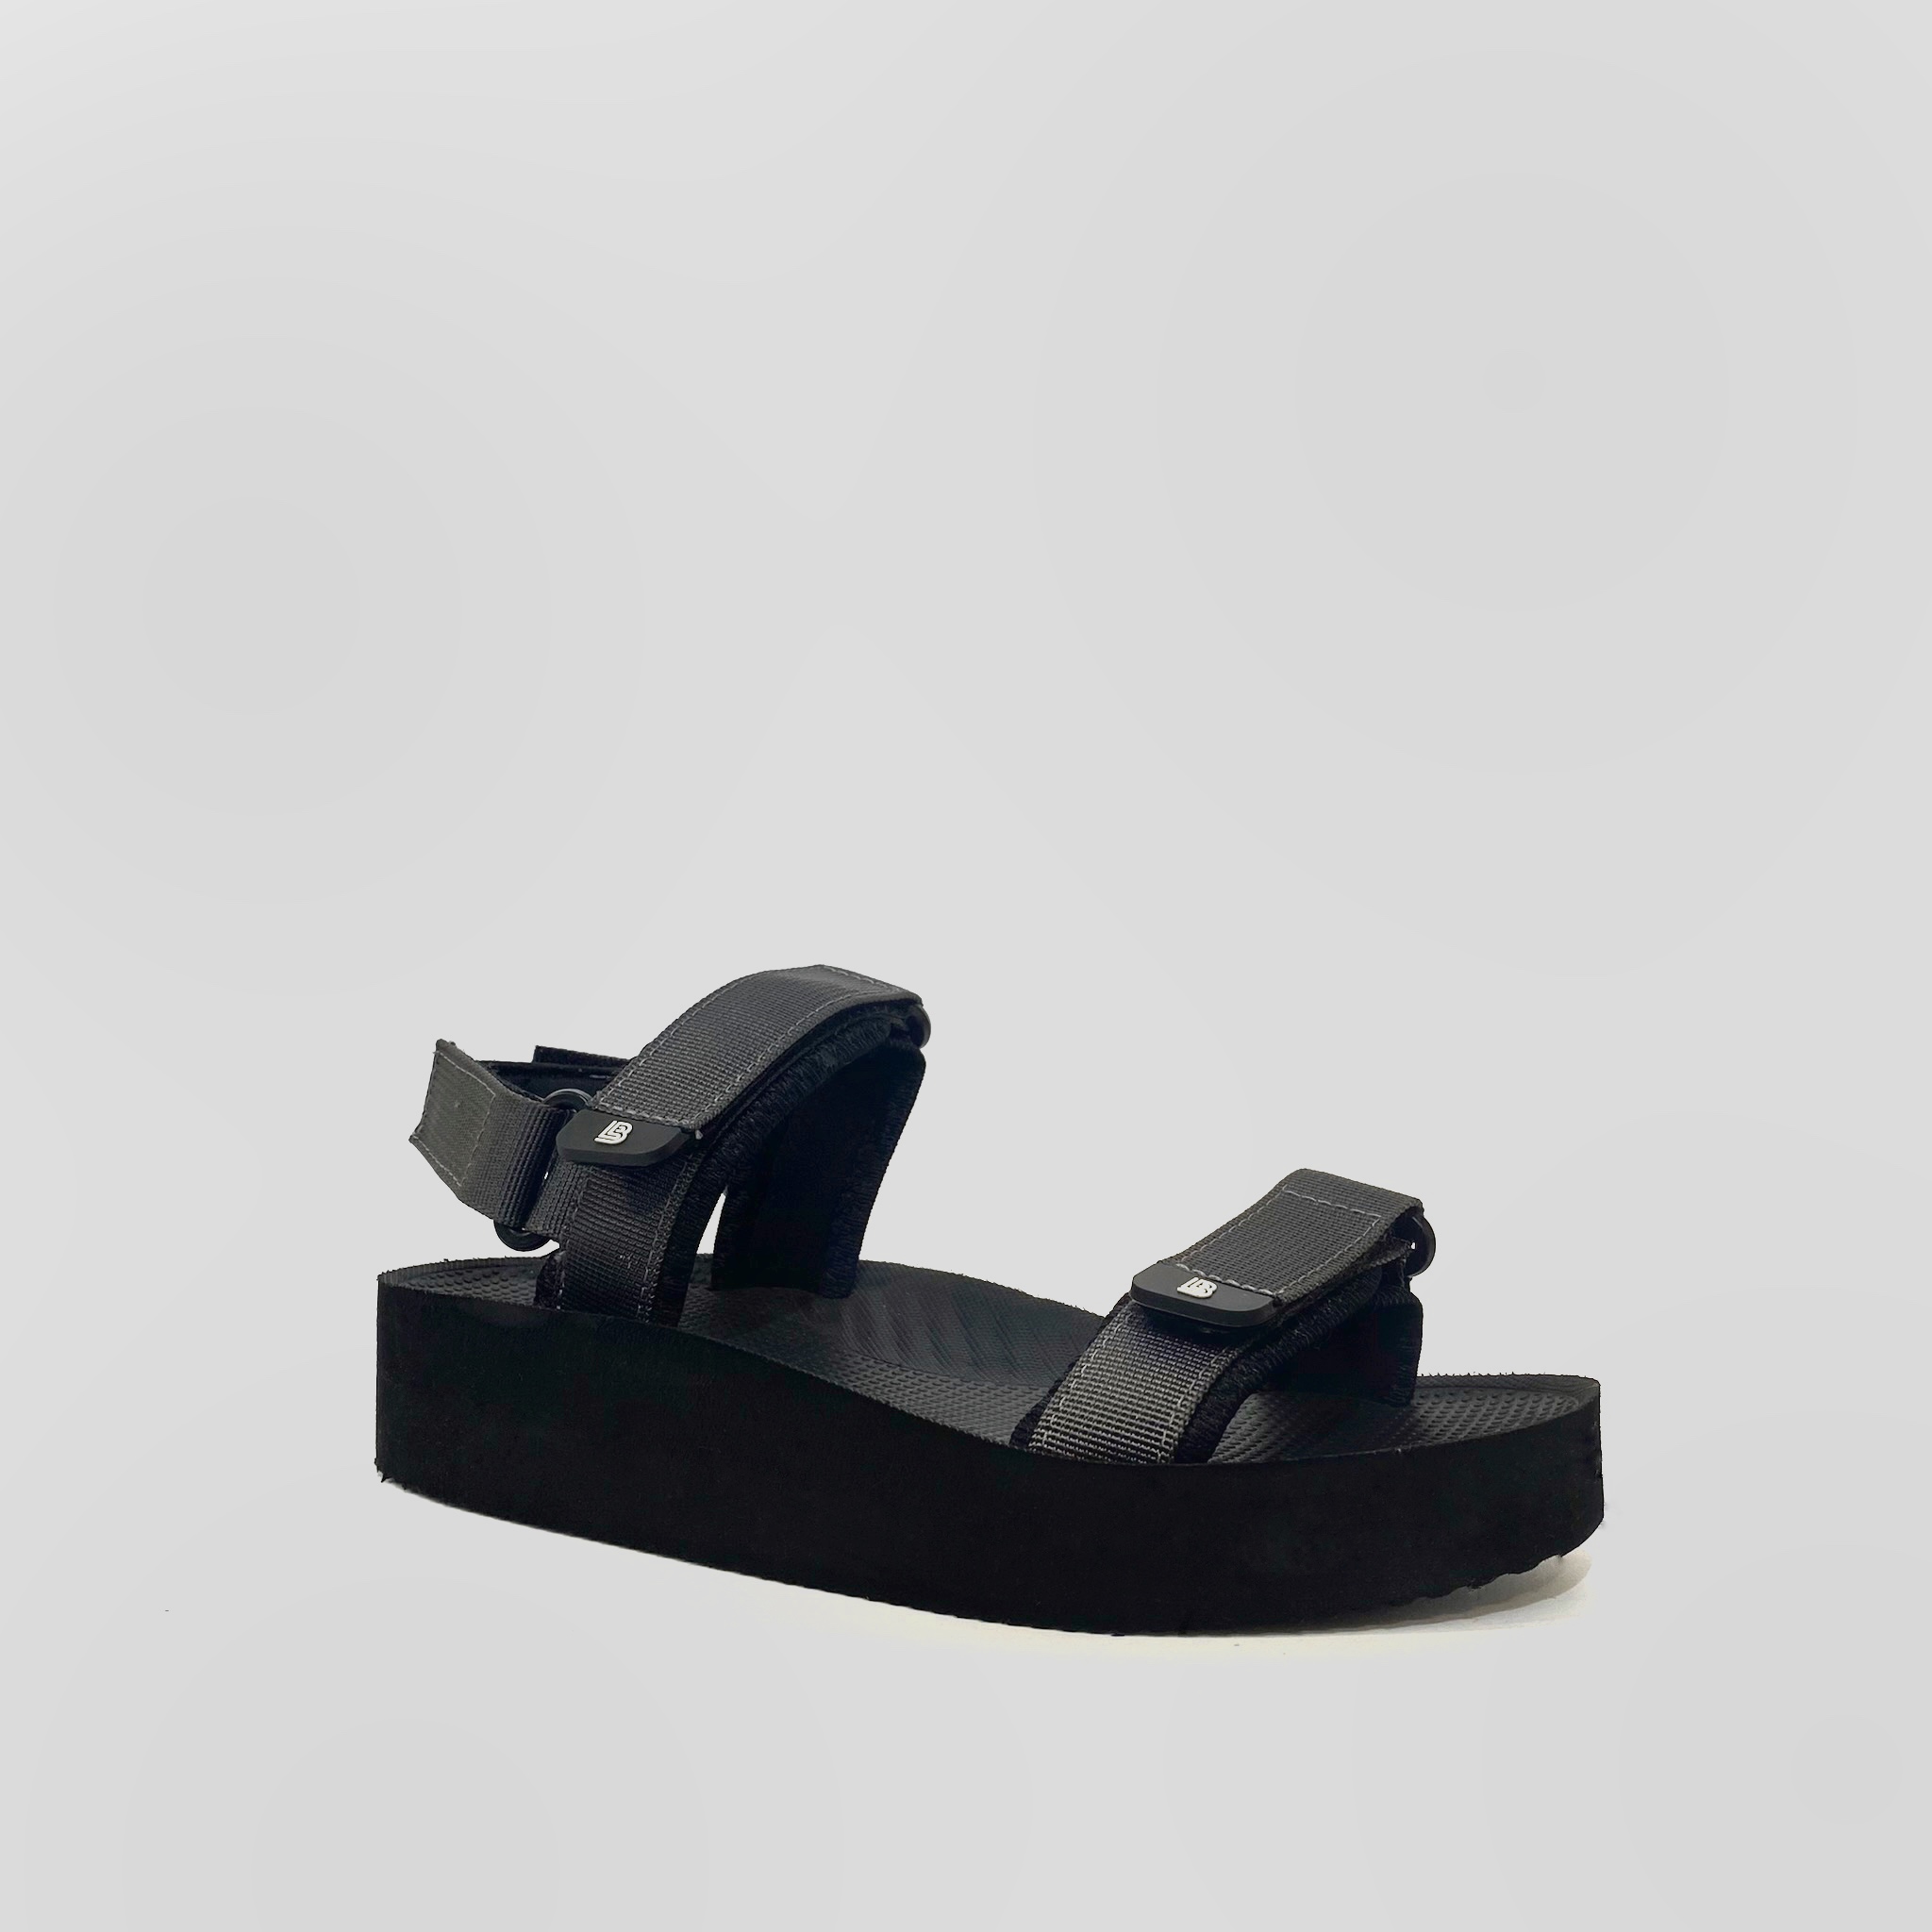 Giày Sandal Nữ The Bily 03W Quai Ngang - Màu Xám BL03WX